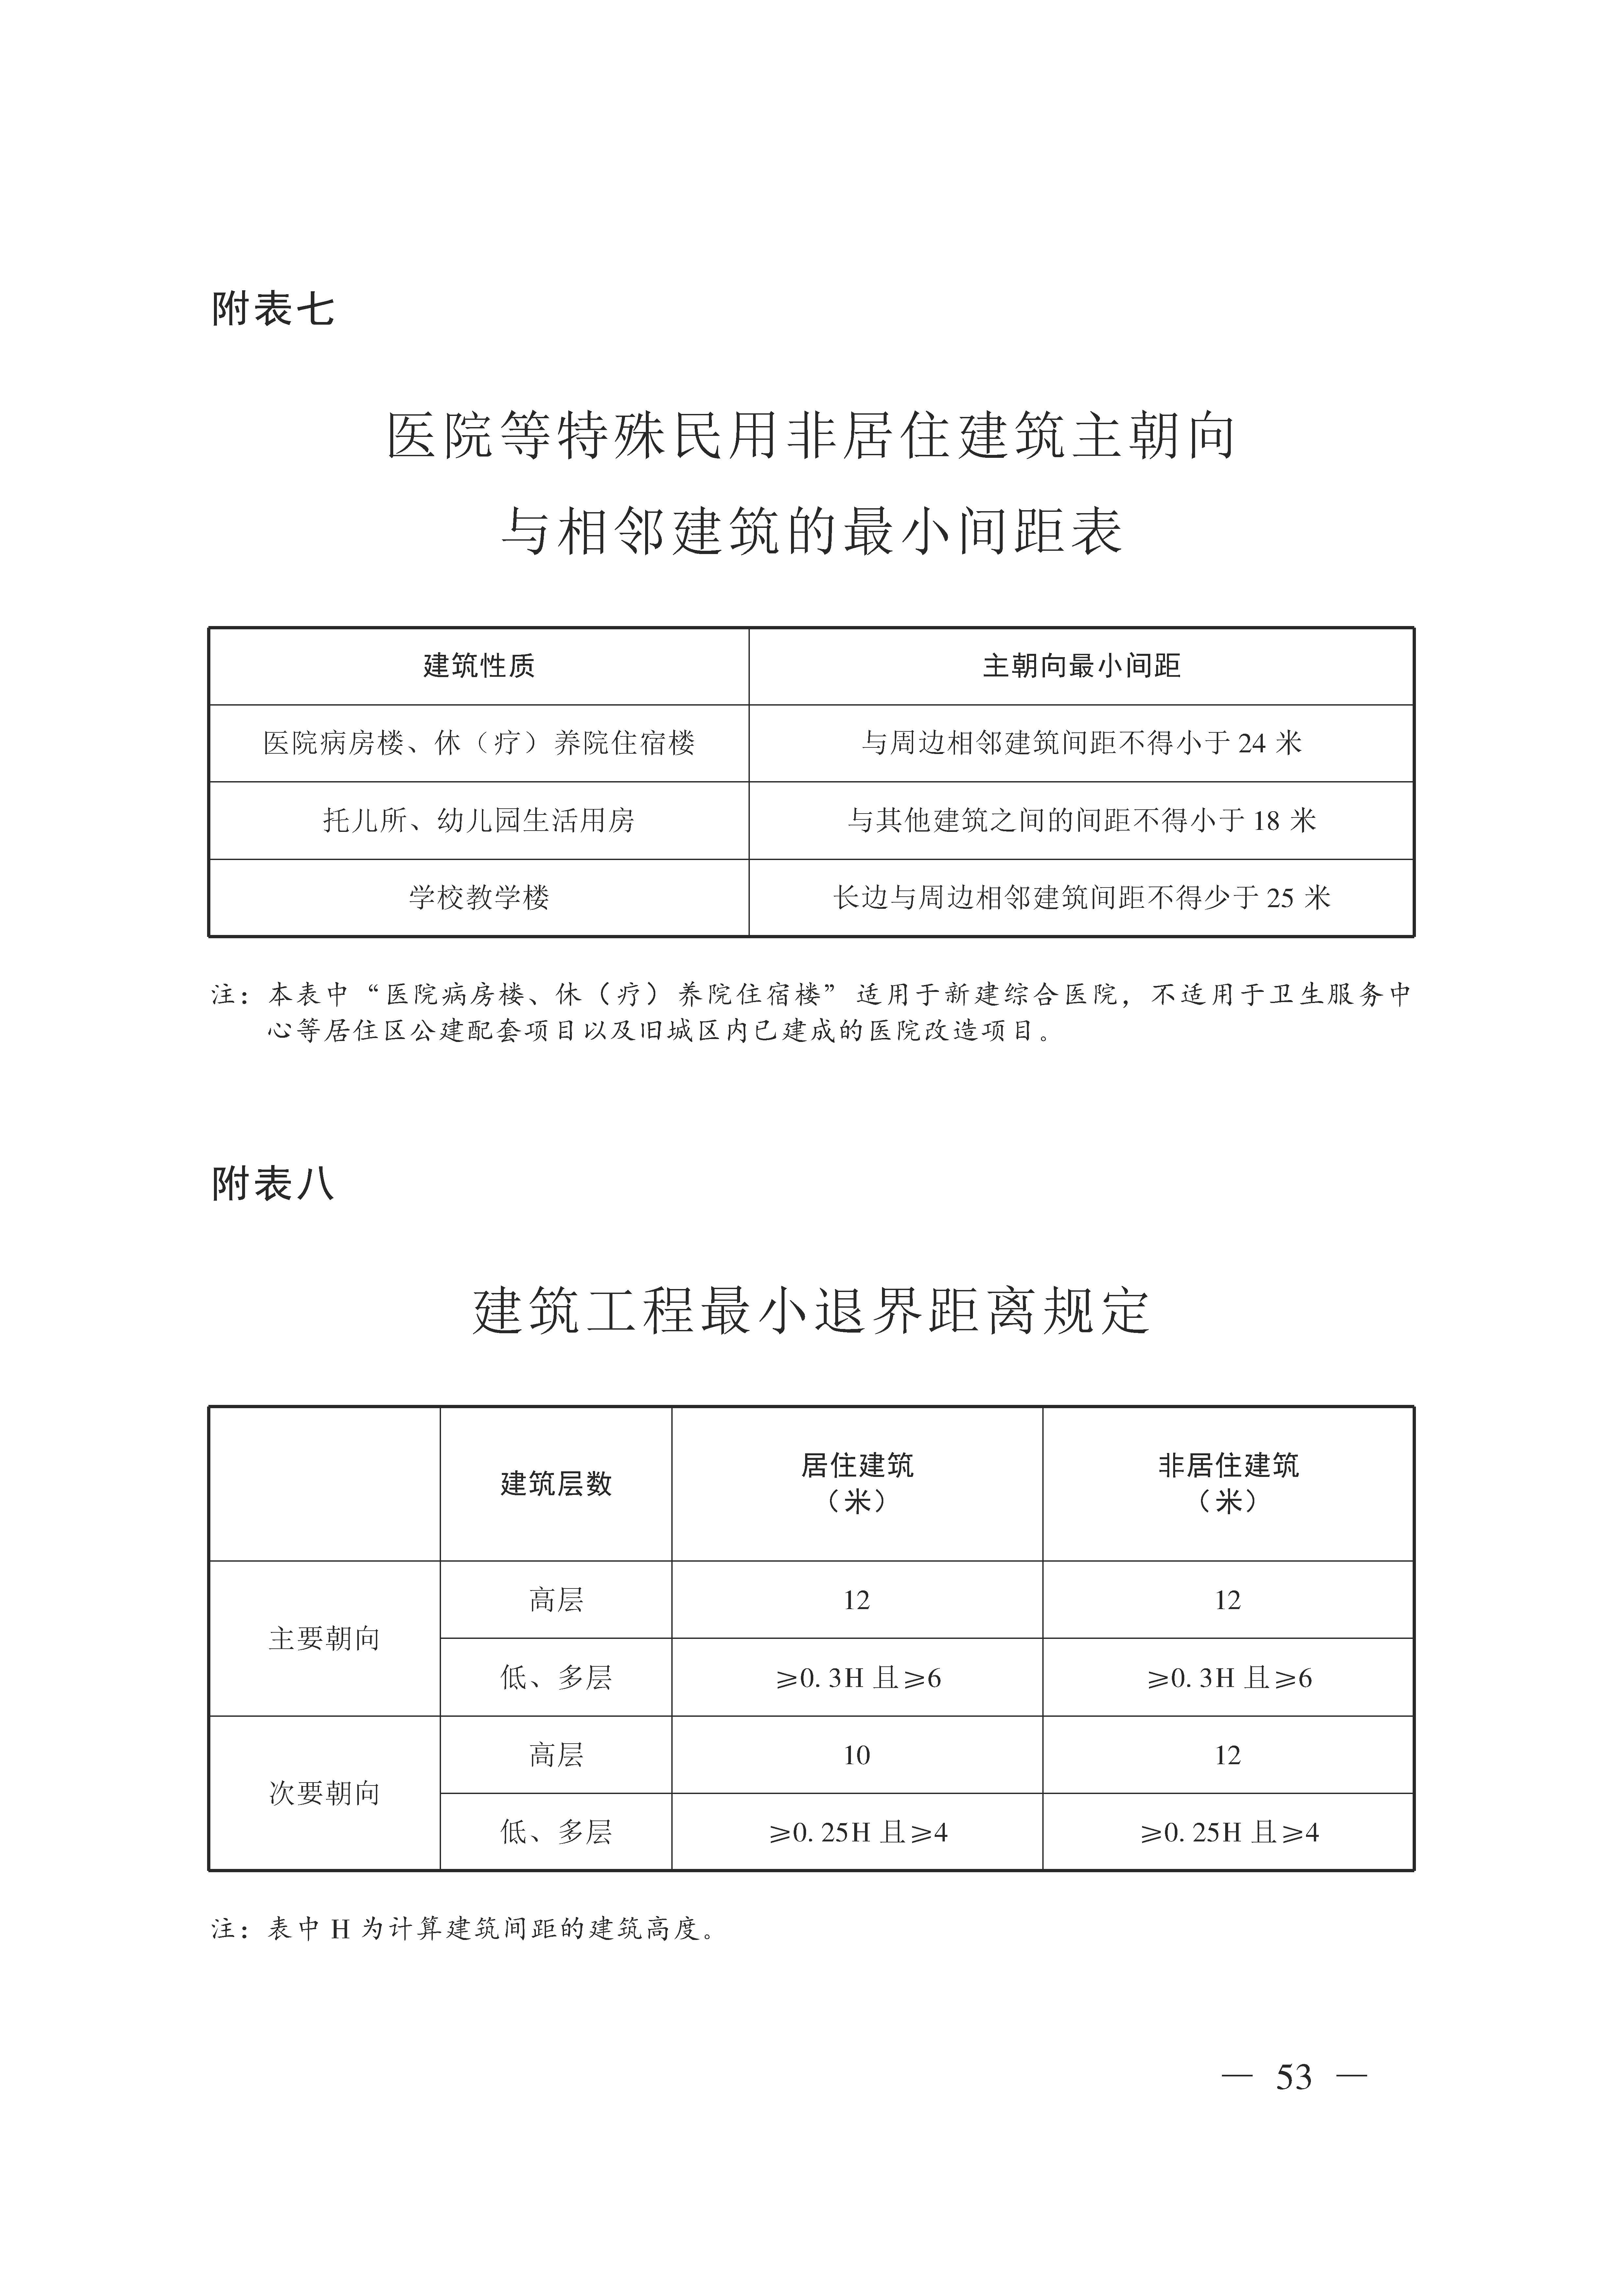 广州市城乡规划技术规定（政府令133号）_页面_53.jpg